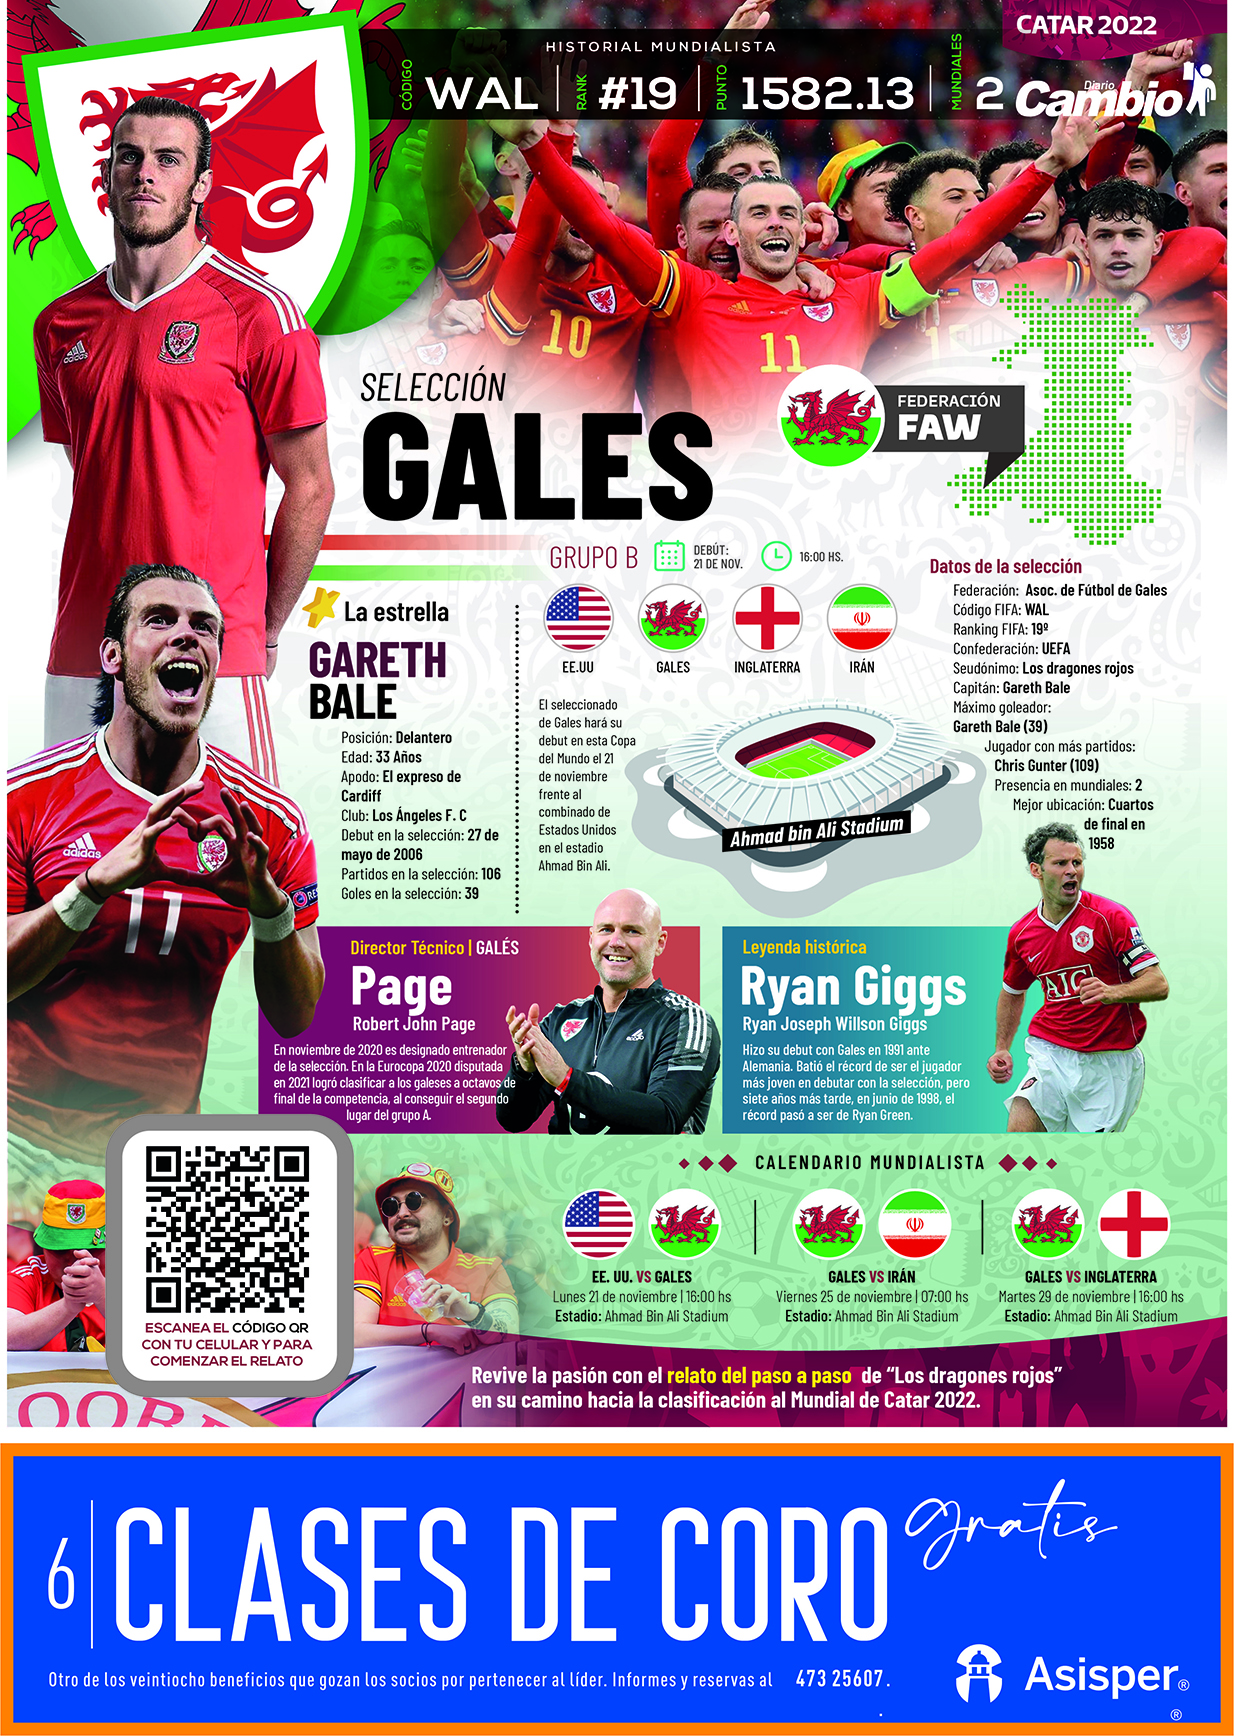 Catar 2022 – Selección de Gales